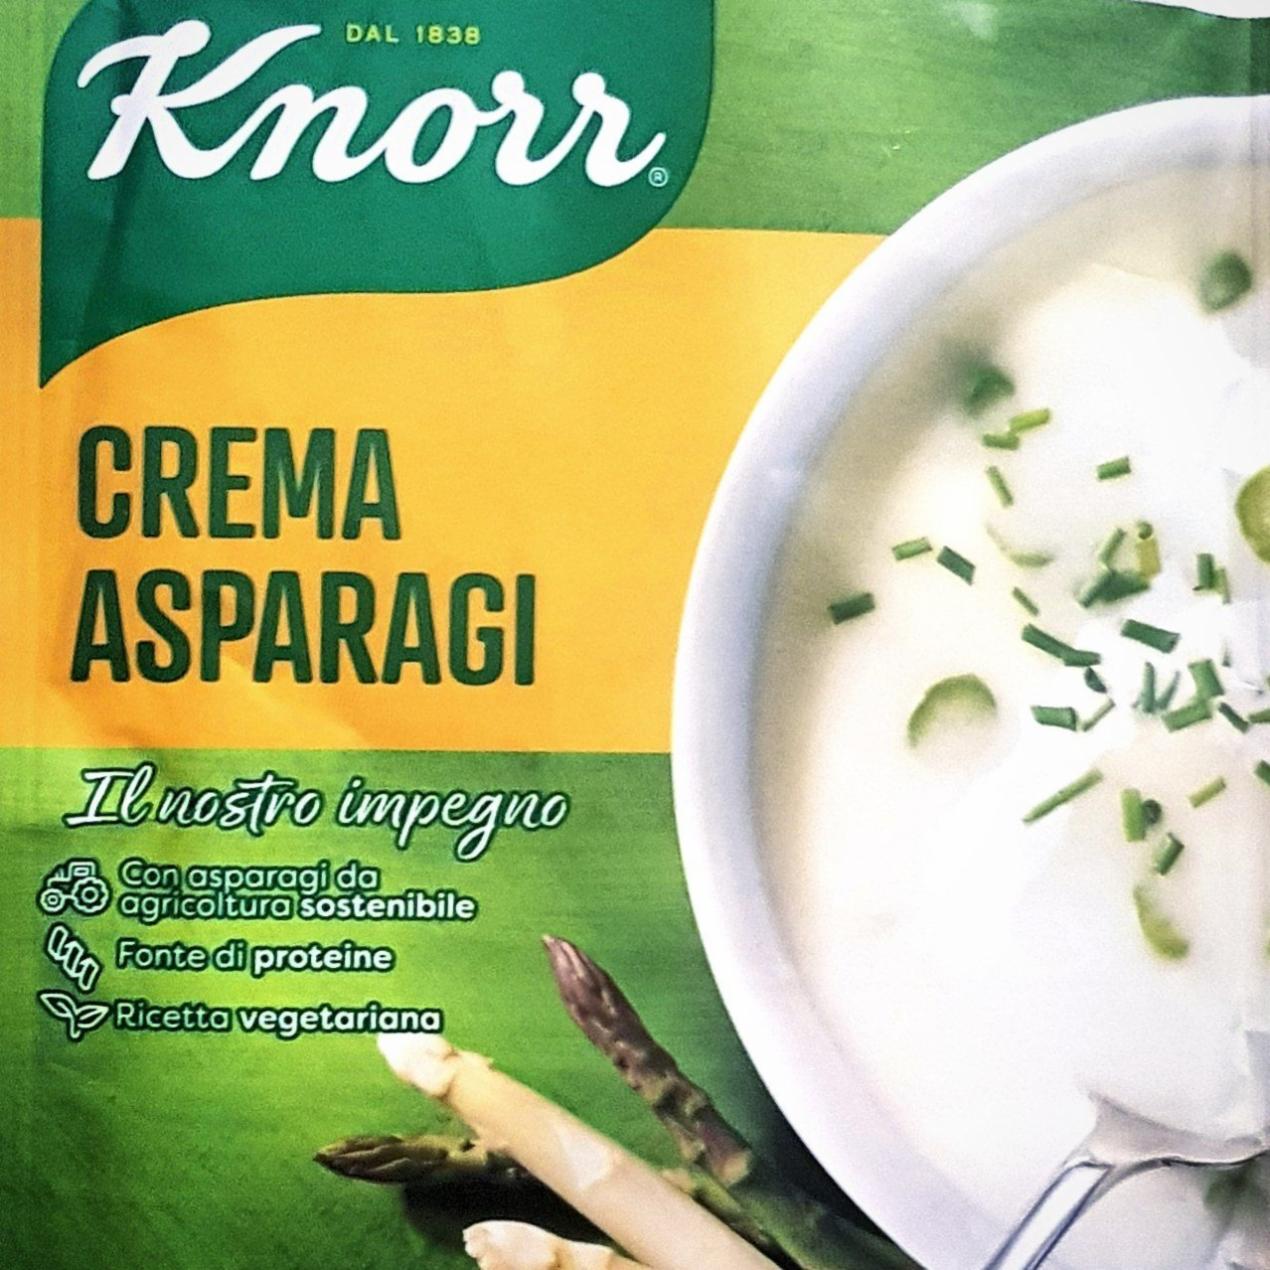 Фото - Крем-суп со спаржей Knorr